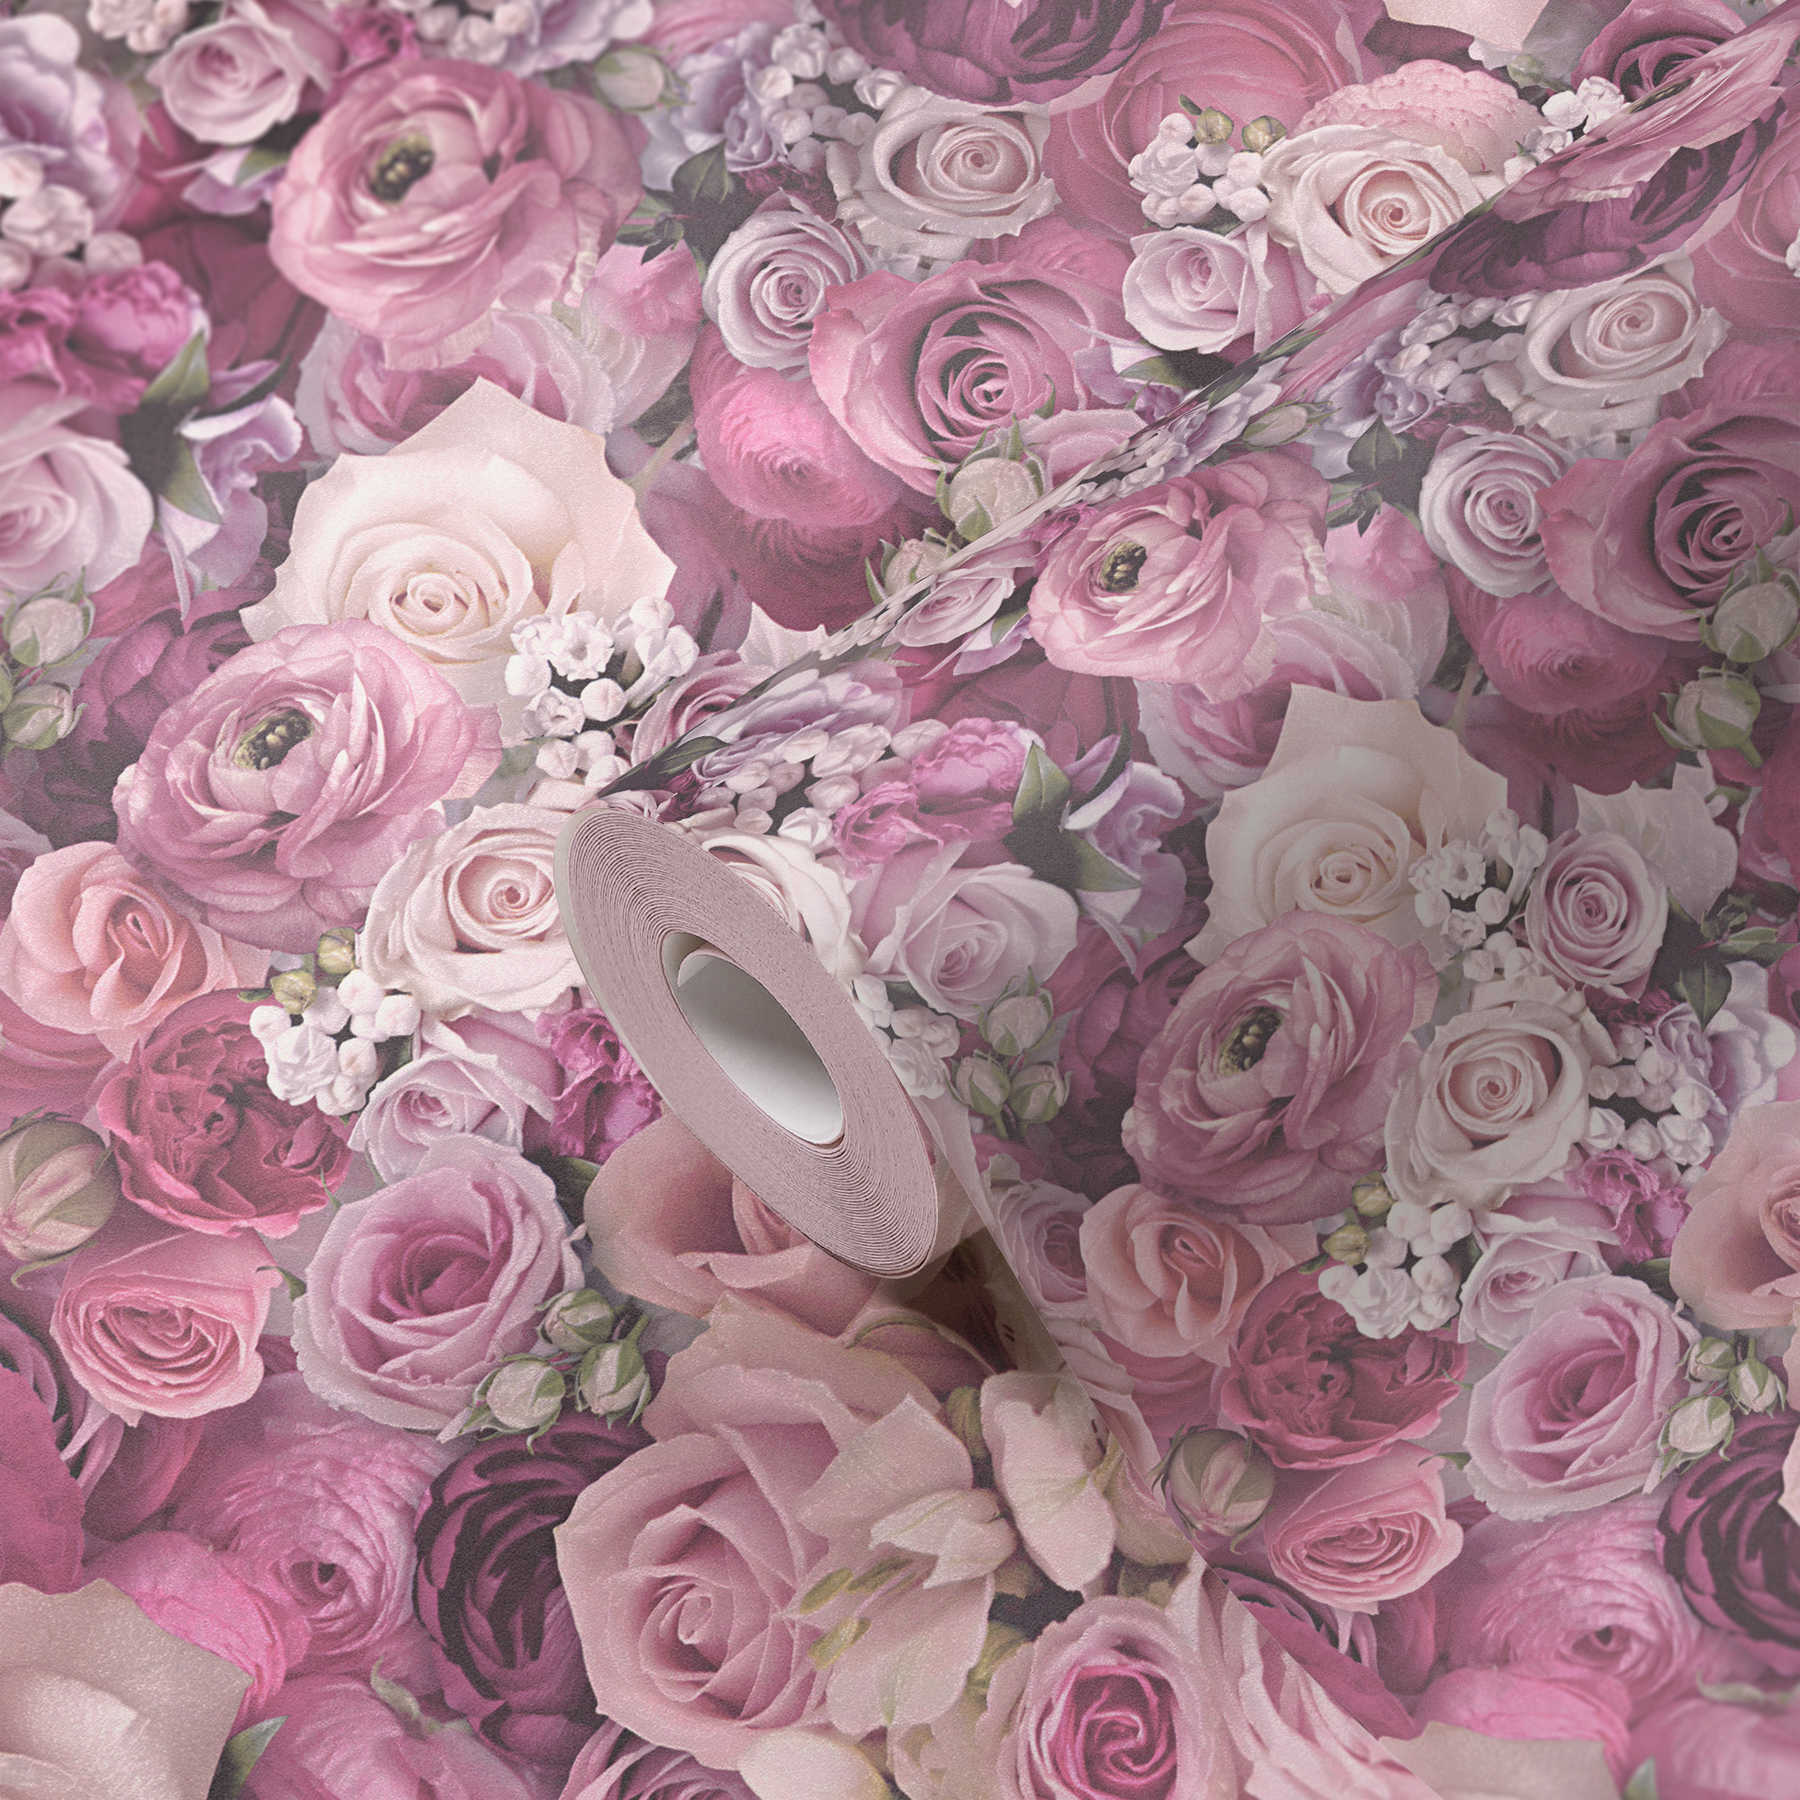             Papier peint intissé 3D Roses motif fleurs - Violet
        